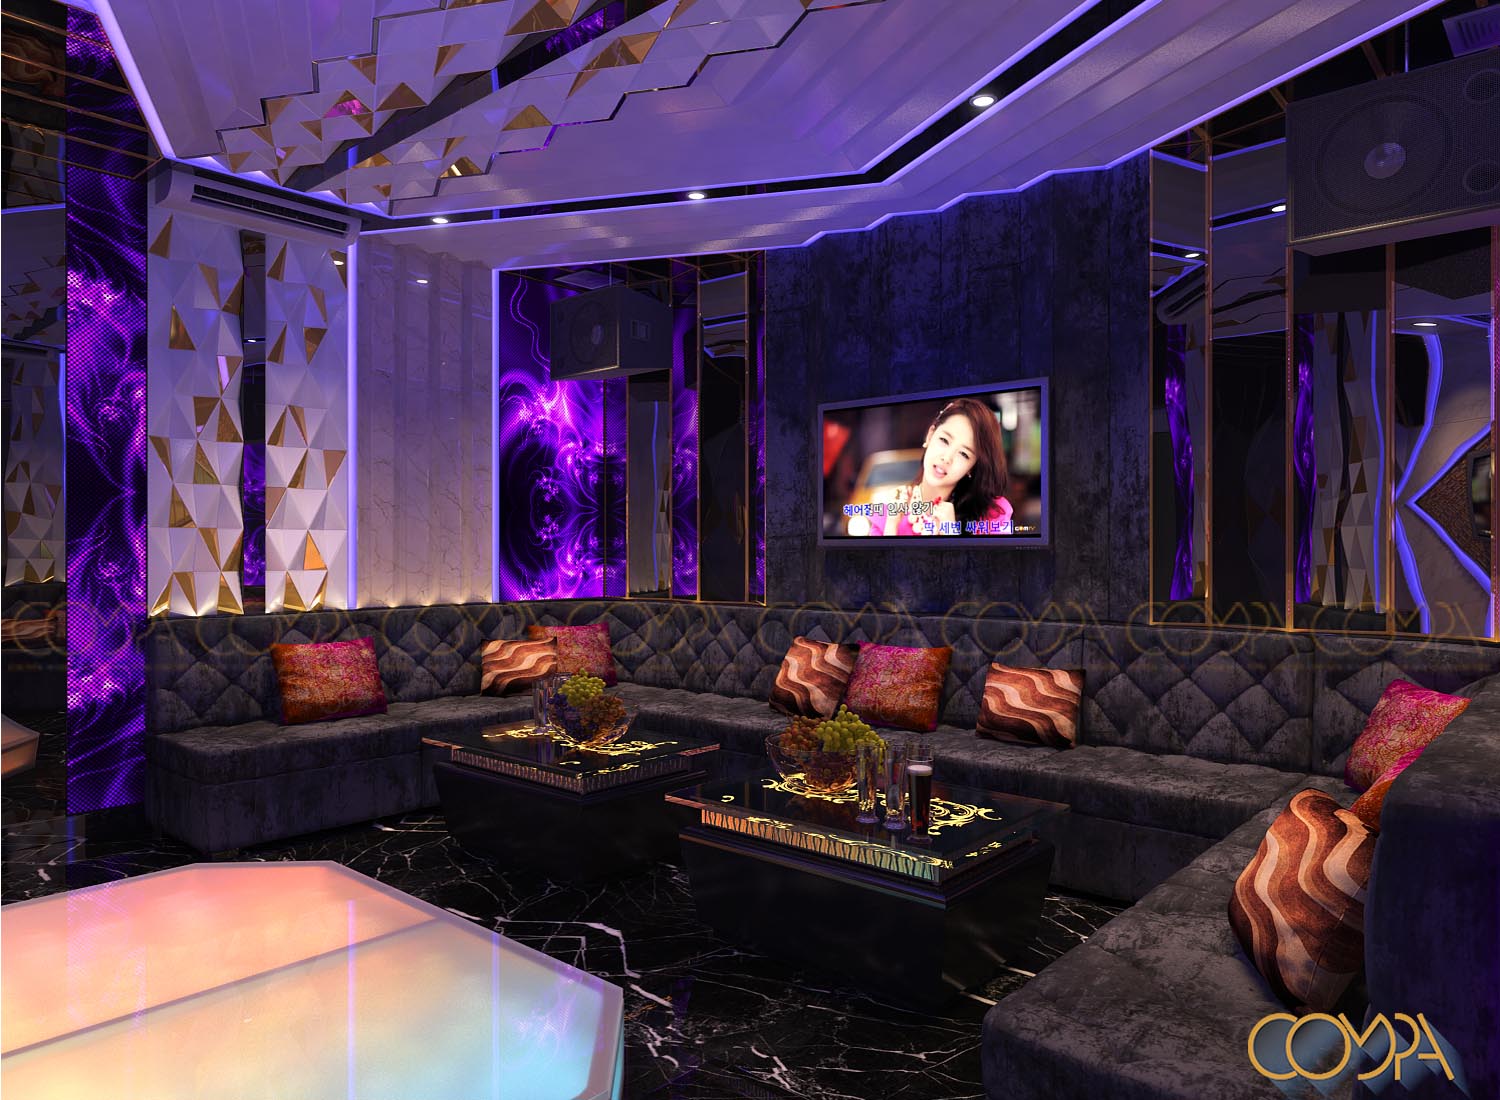 thiết kế nội thất phòng karaoke hiện đại kết hợp màn hình led mẫu 1